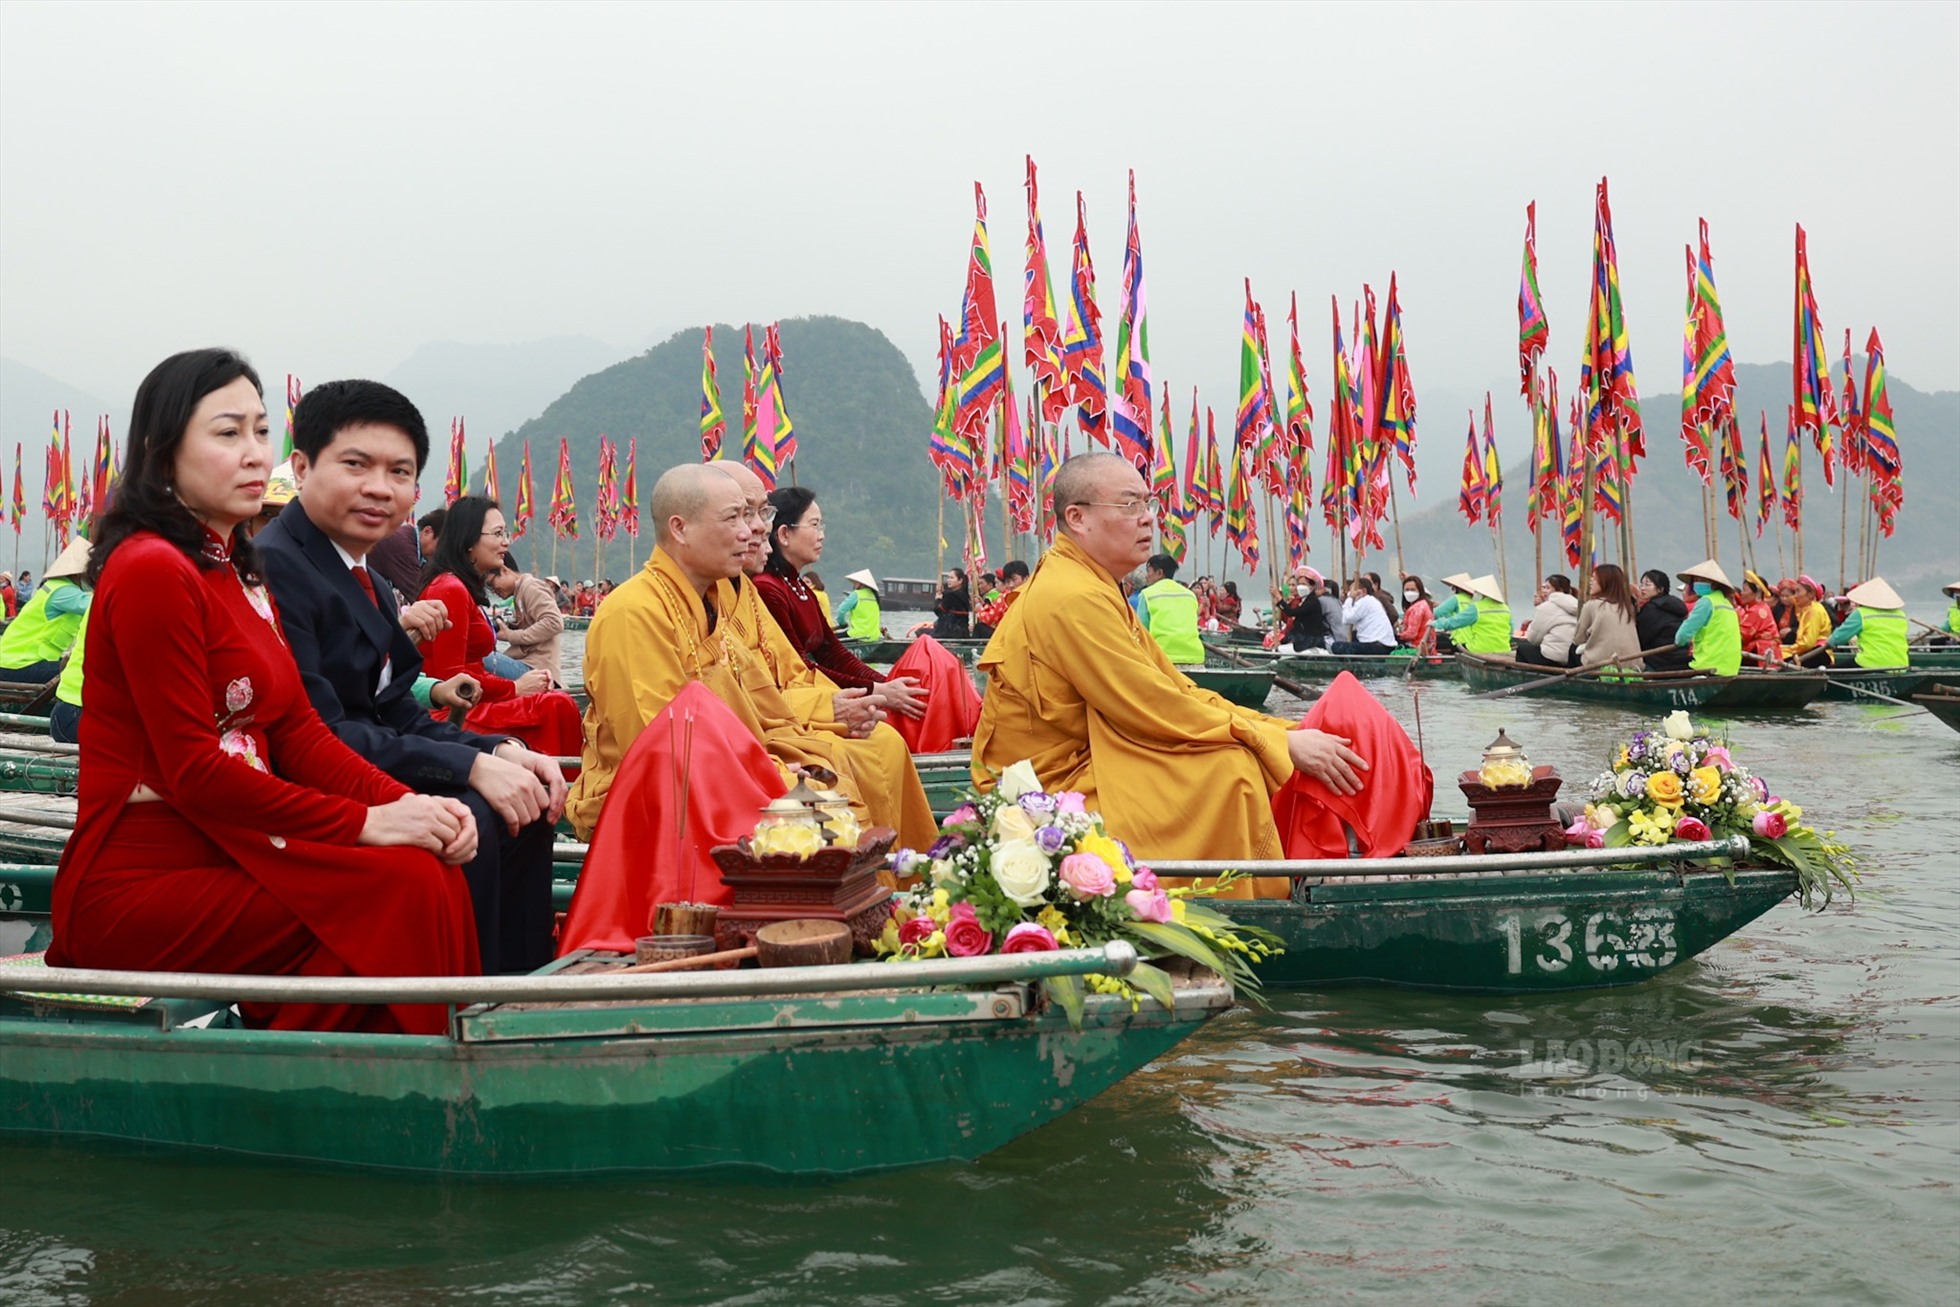 Đoàn lấy nước di chuyển ra giữa hồ Tam Chúc để làm lễ lấy nước. 3 thuyền đi đầu là sư thầy Thích Thanh Nhiễu và đại biểu.